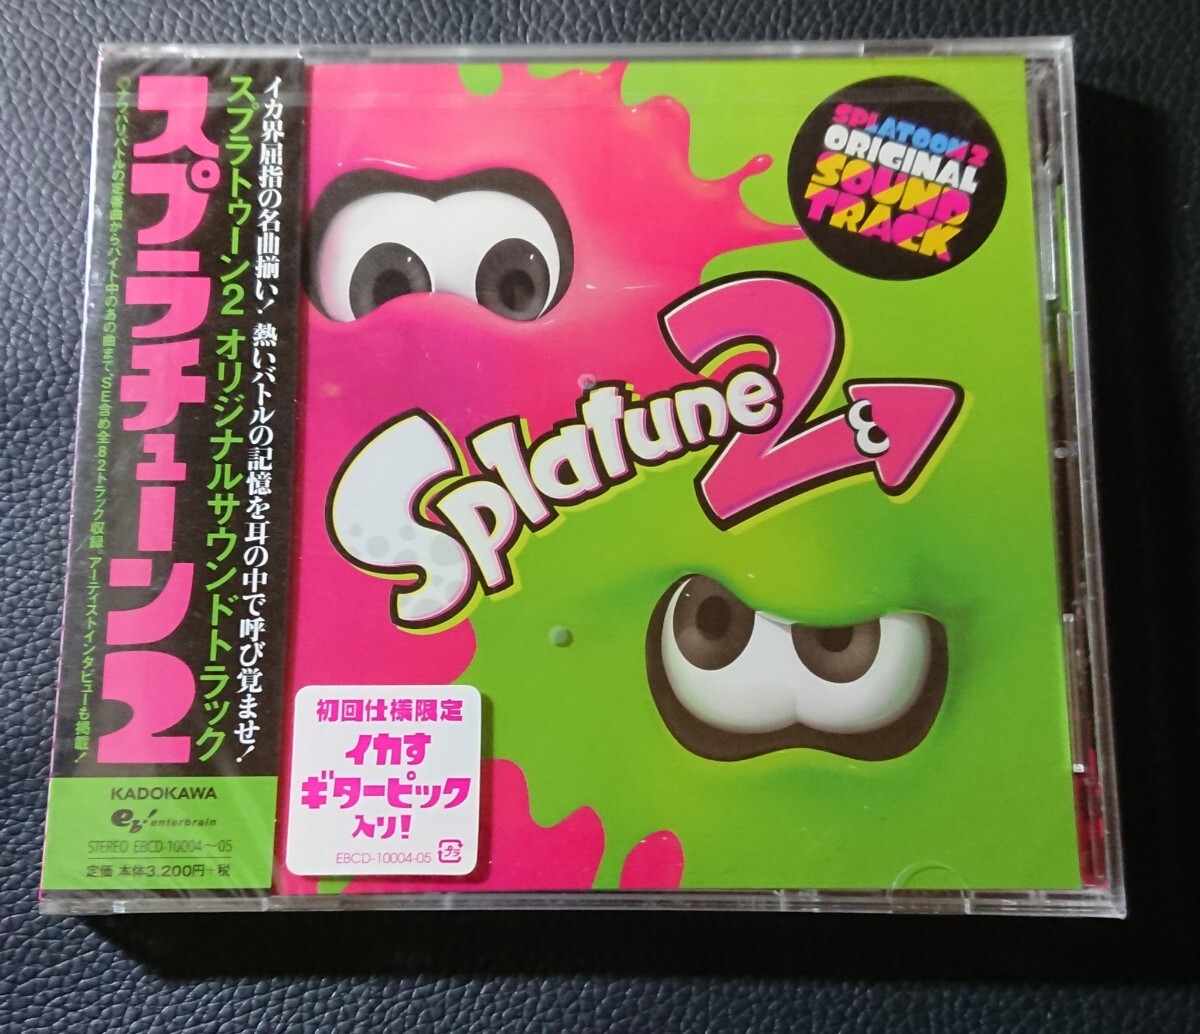 スプラトゥーン2 オリジナルサウンドトラック ORIGINAL スプラチューン2 Splatune2- SOUNDTRACK CD 初回限定イカすギターピック入り_画像1